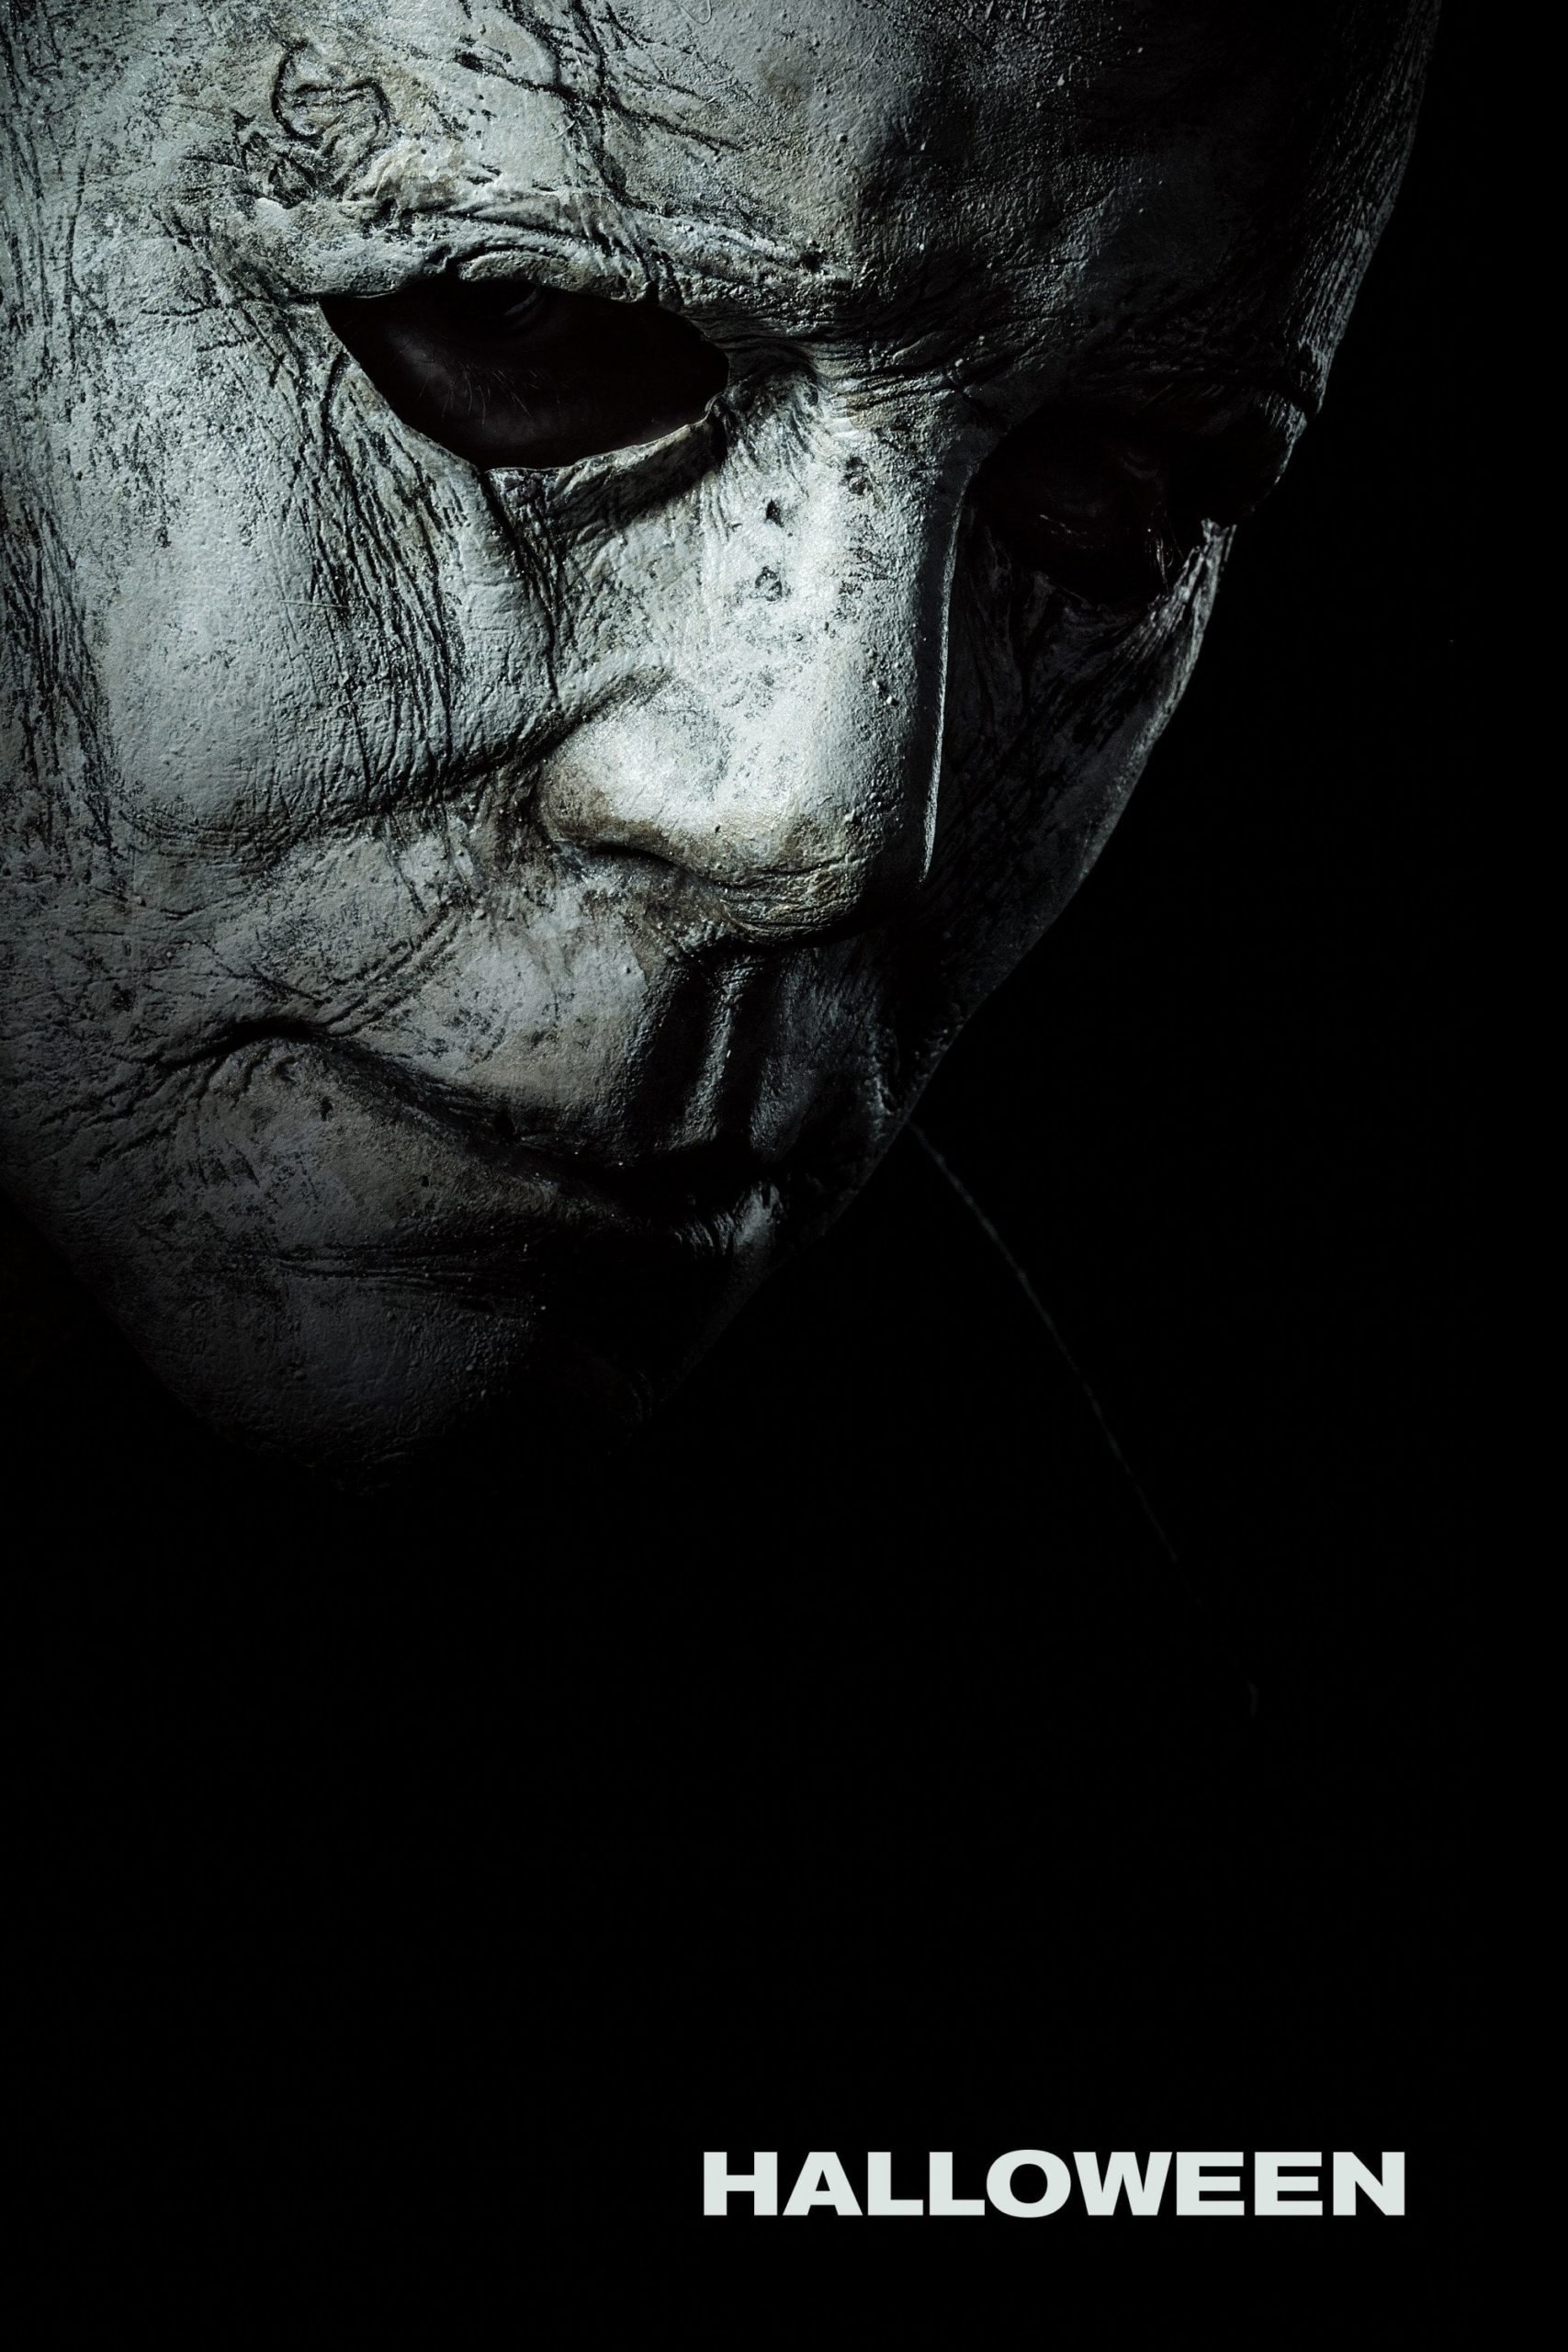 Poster de la película "Halloween"